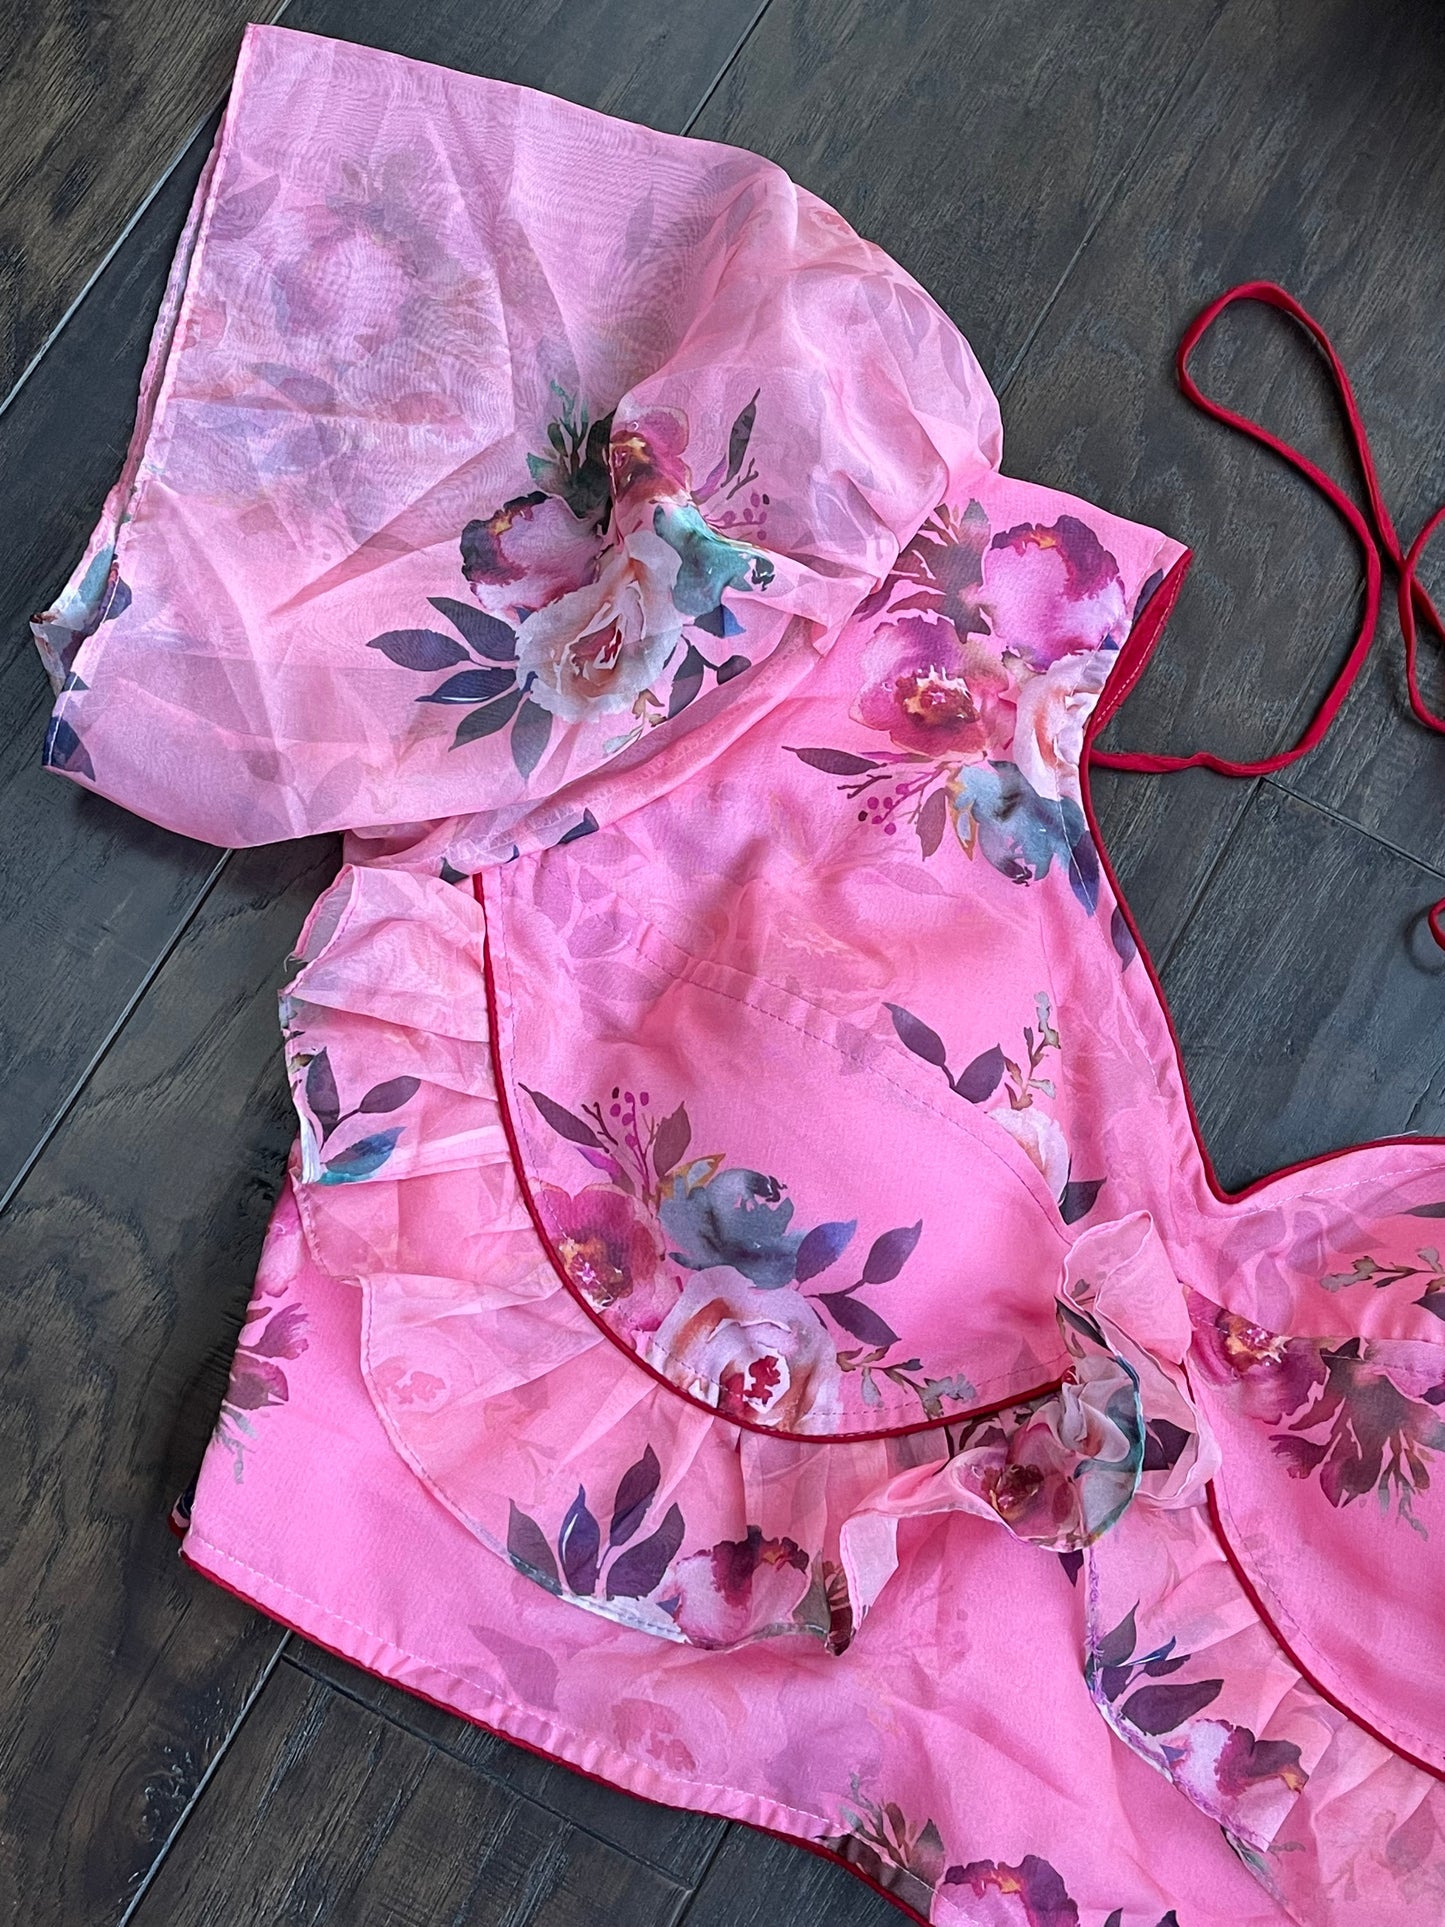 Designer Blouse - Pink Floral